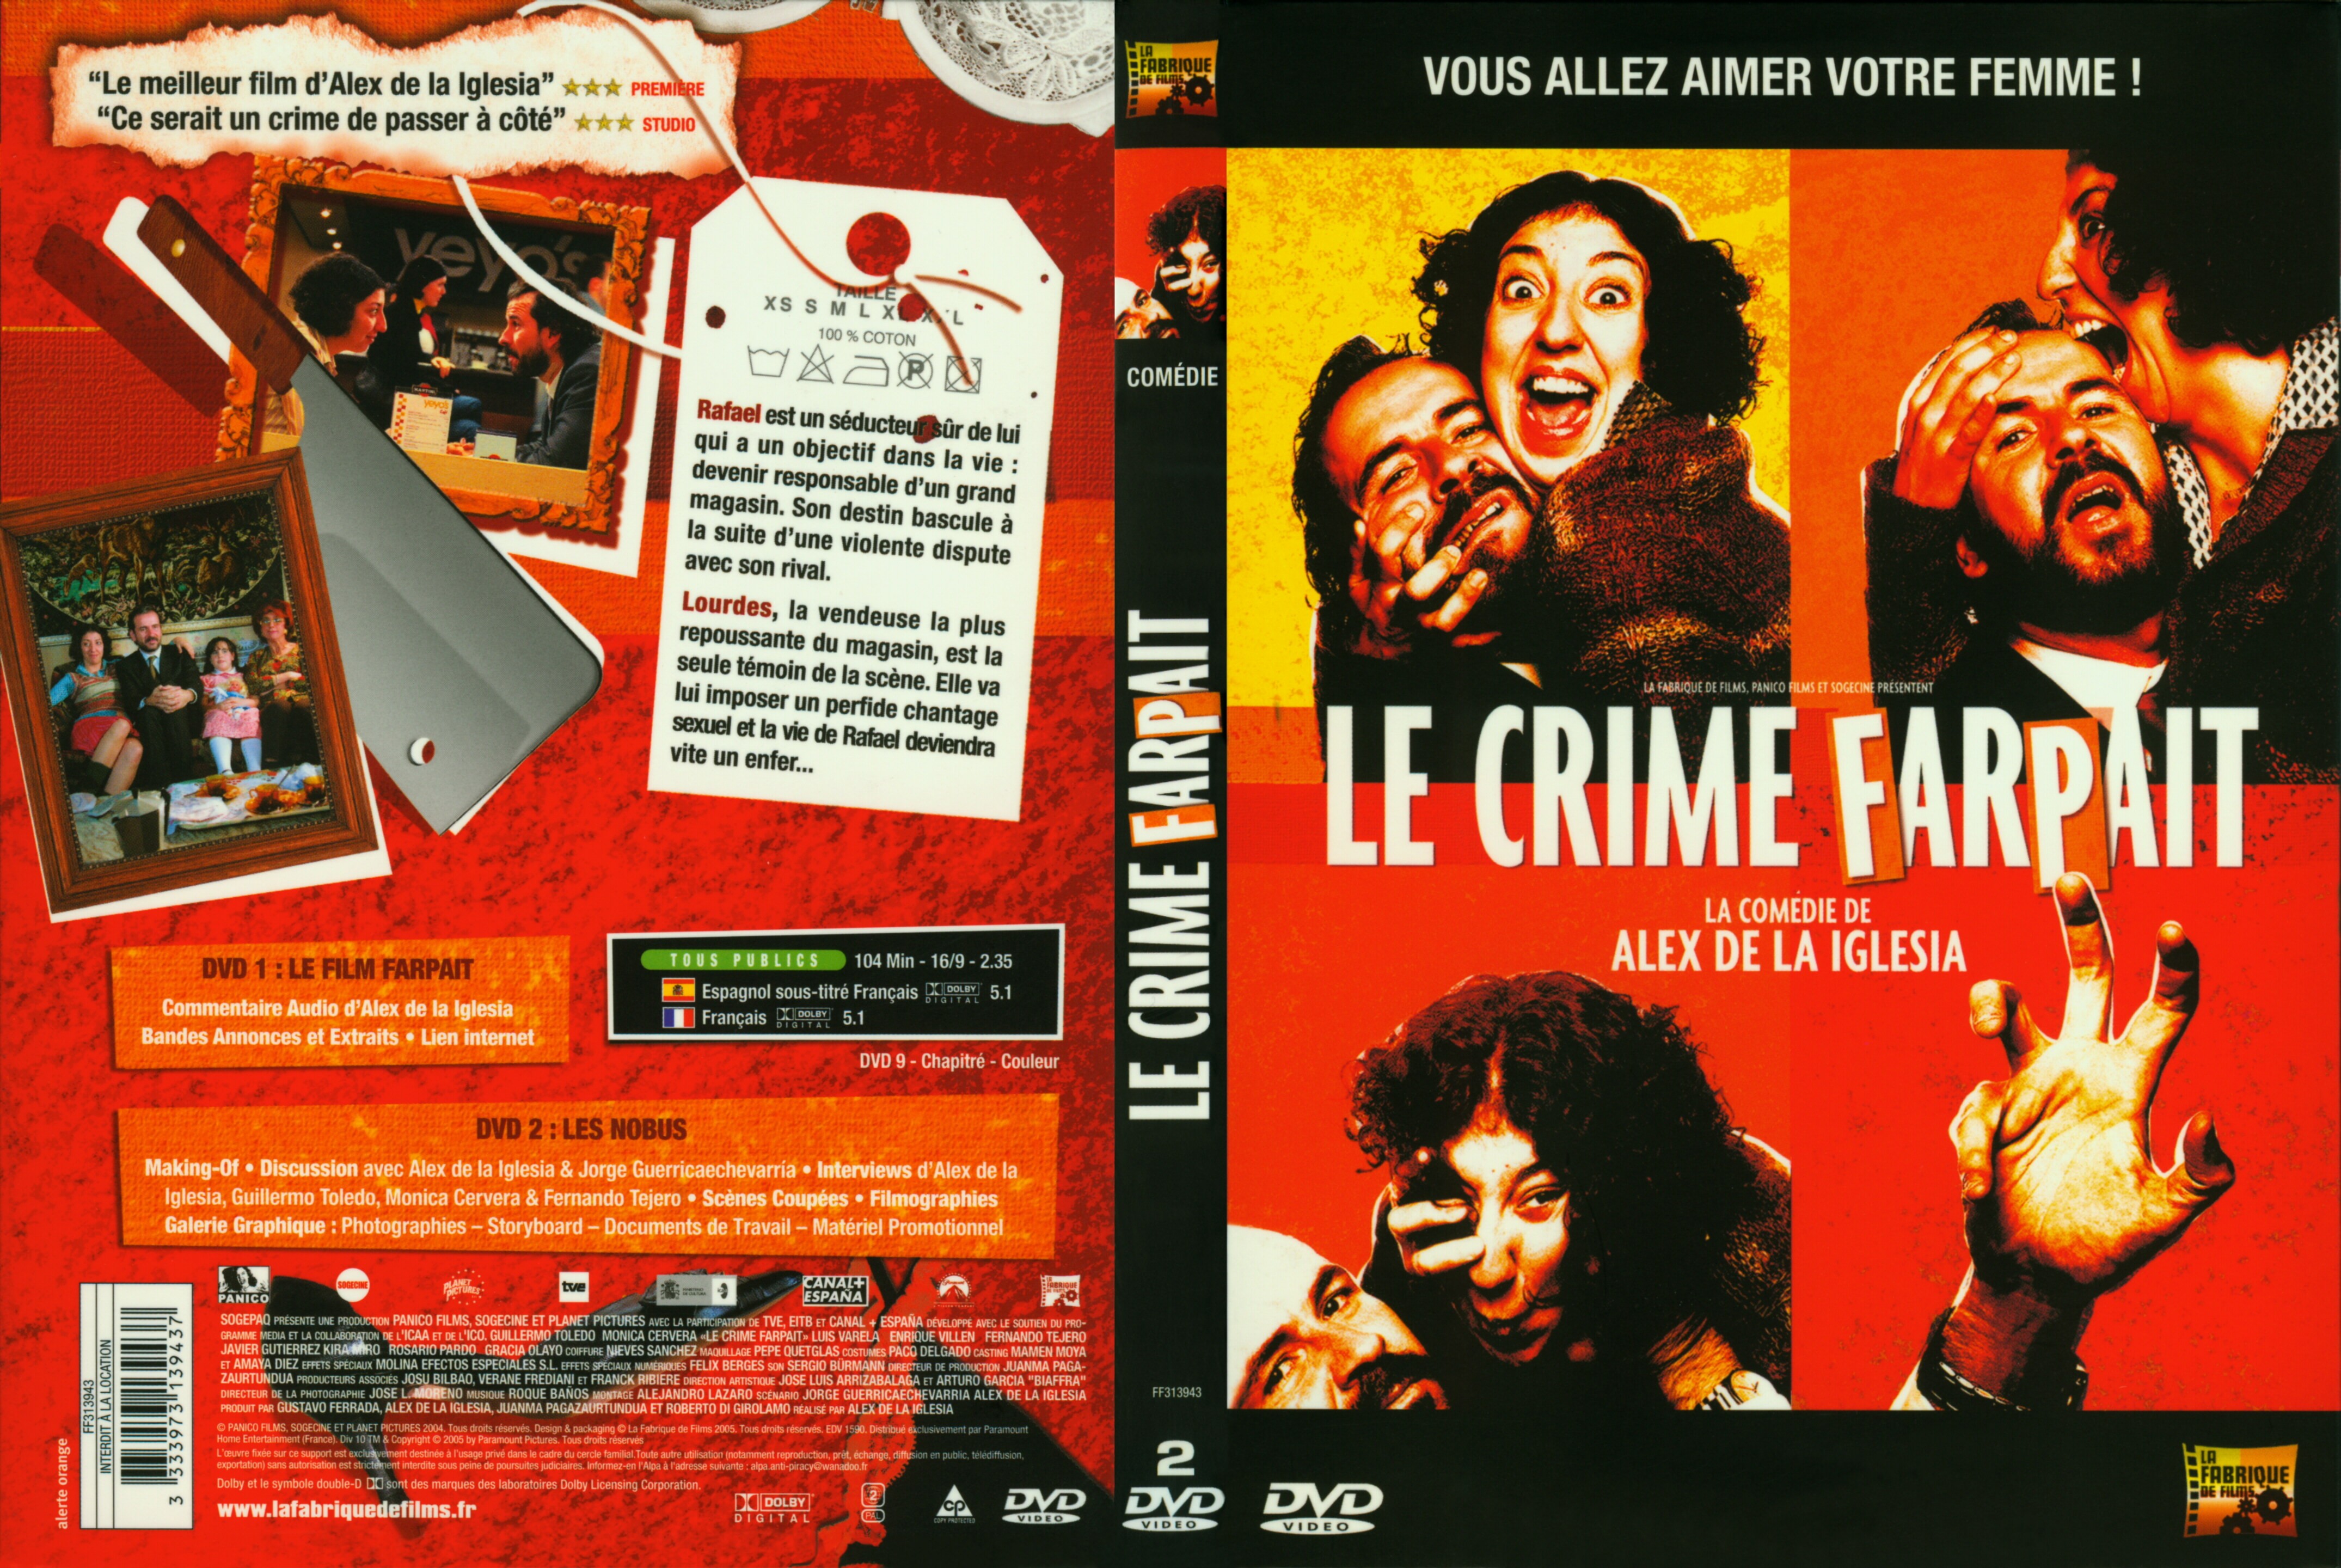 Jaquette DVD Le crime farpait v2